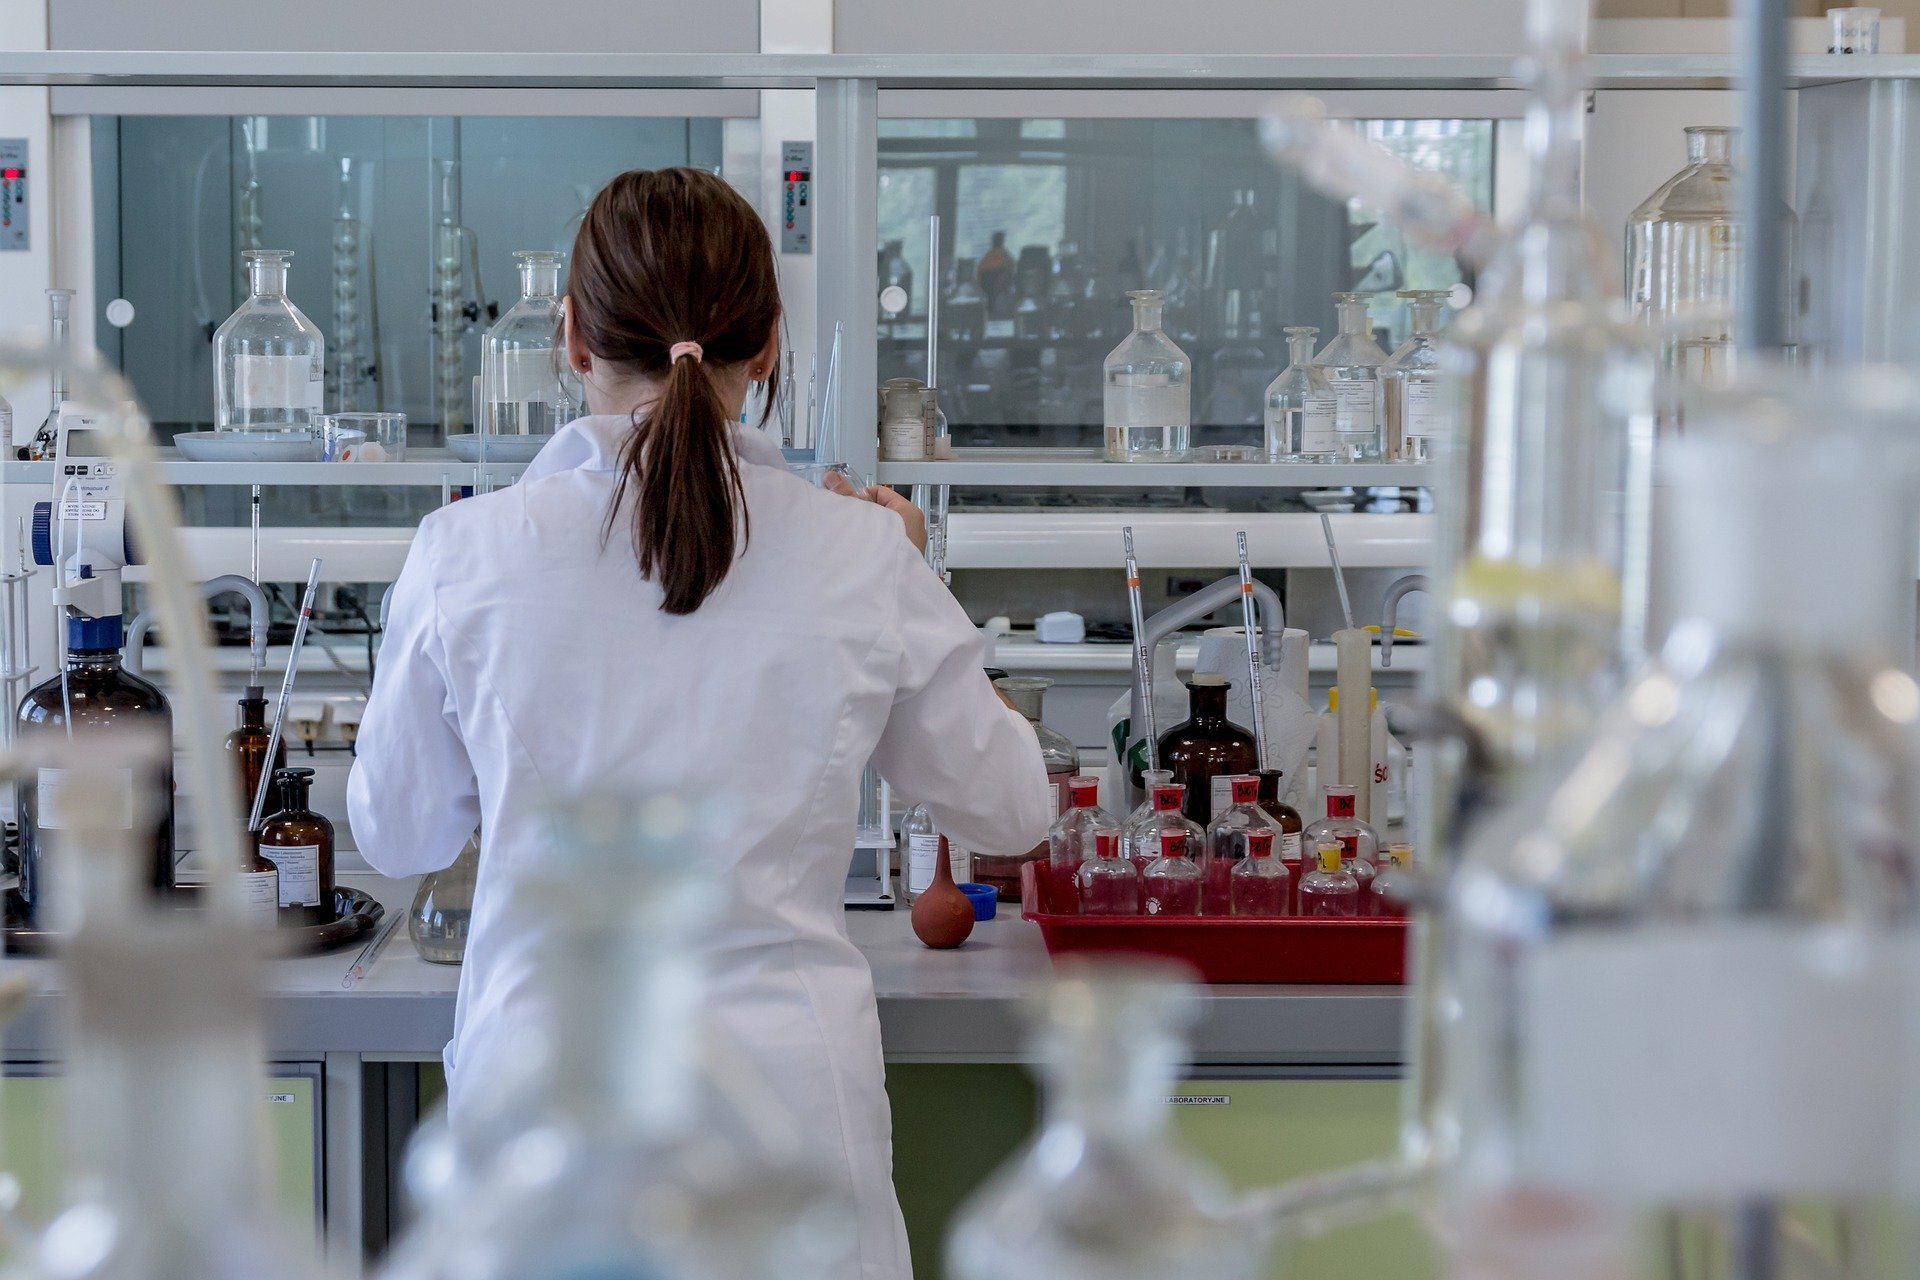 Zdjęcie przedstawia kobietę w białym fartuchu, która pracuje w laboratorium. Jest odwrócona tyłem do fotografa. Na blacie znajdującą się przed ną znajdują się liczne tacki, butelki, menzurki i probówki.